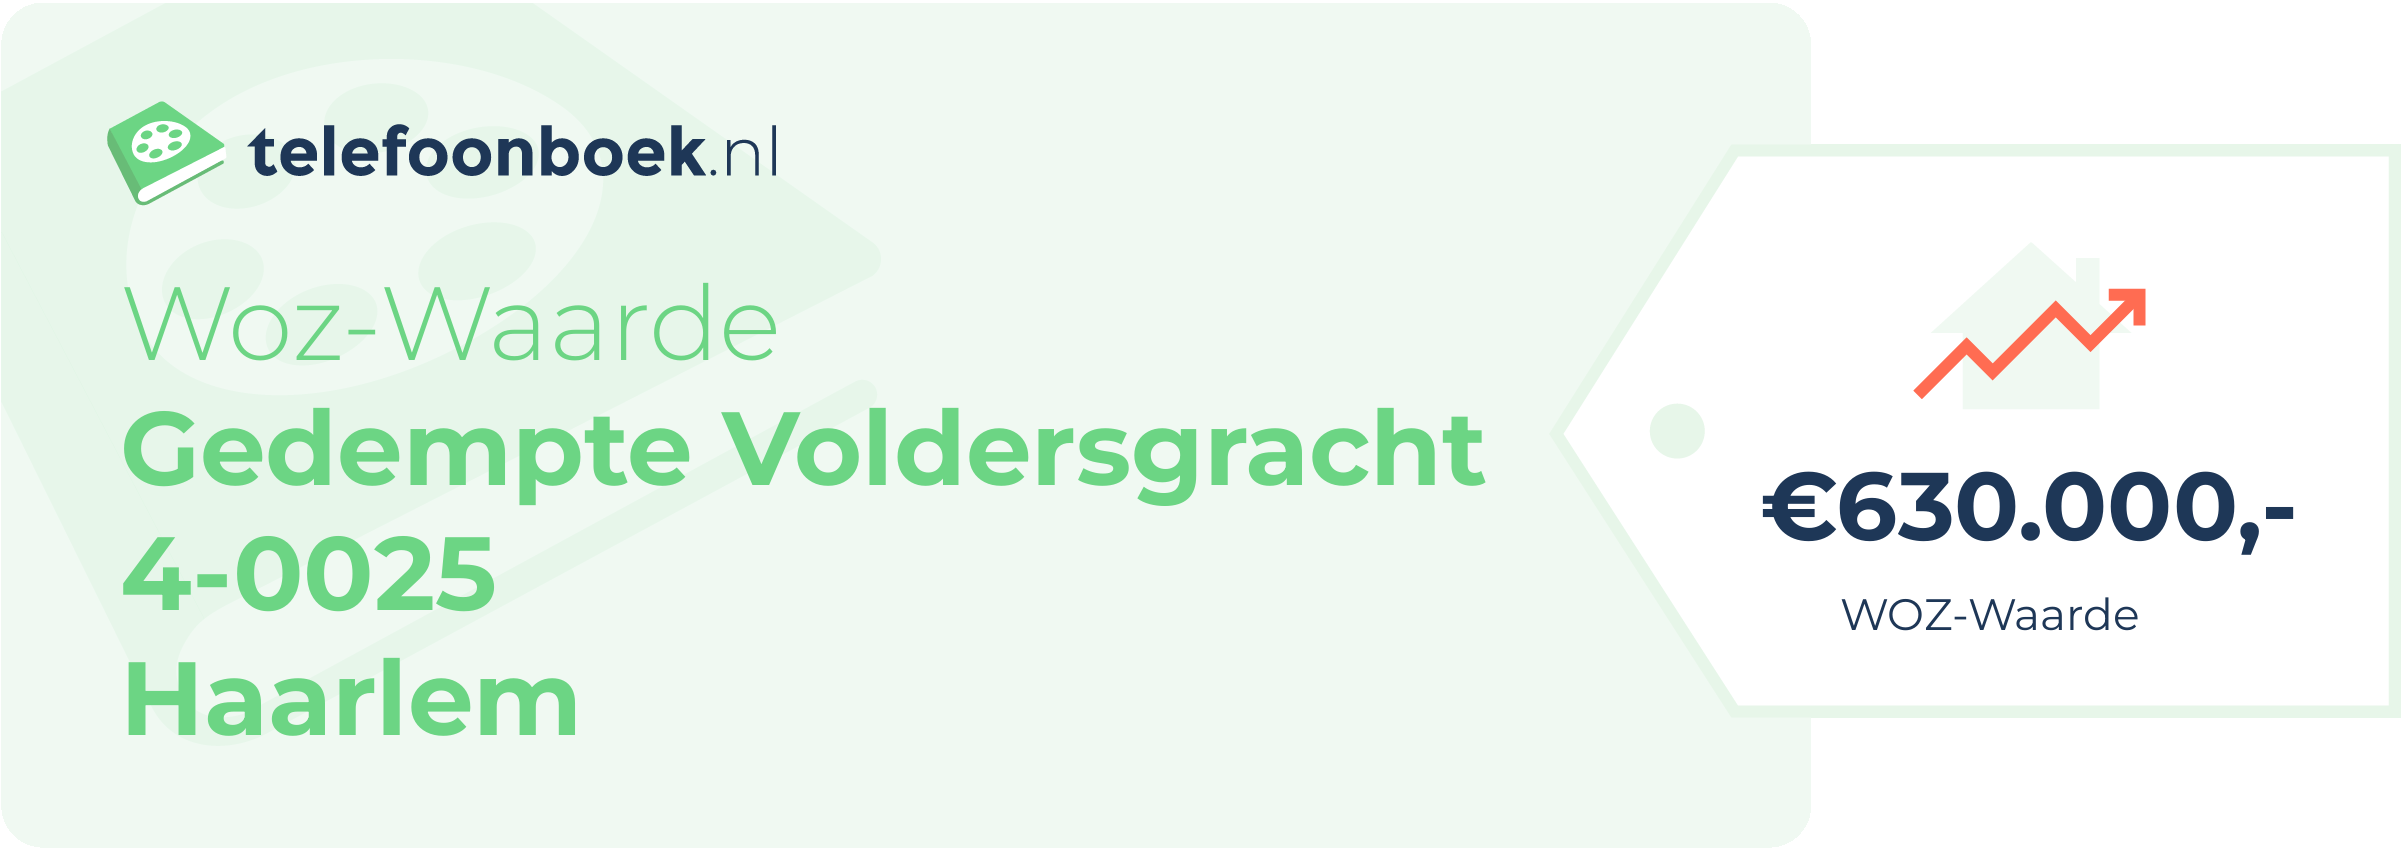 WOZ-waarde Gedempte Voldersgracht 4-0025 Haarlem